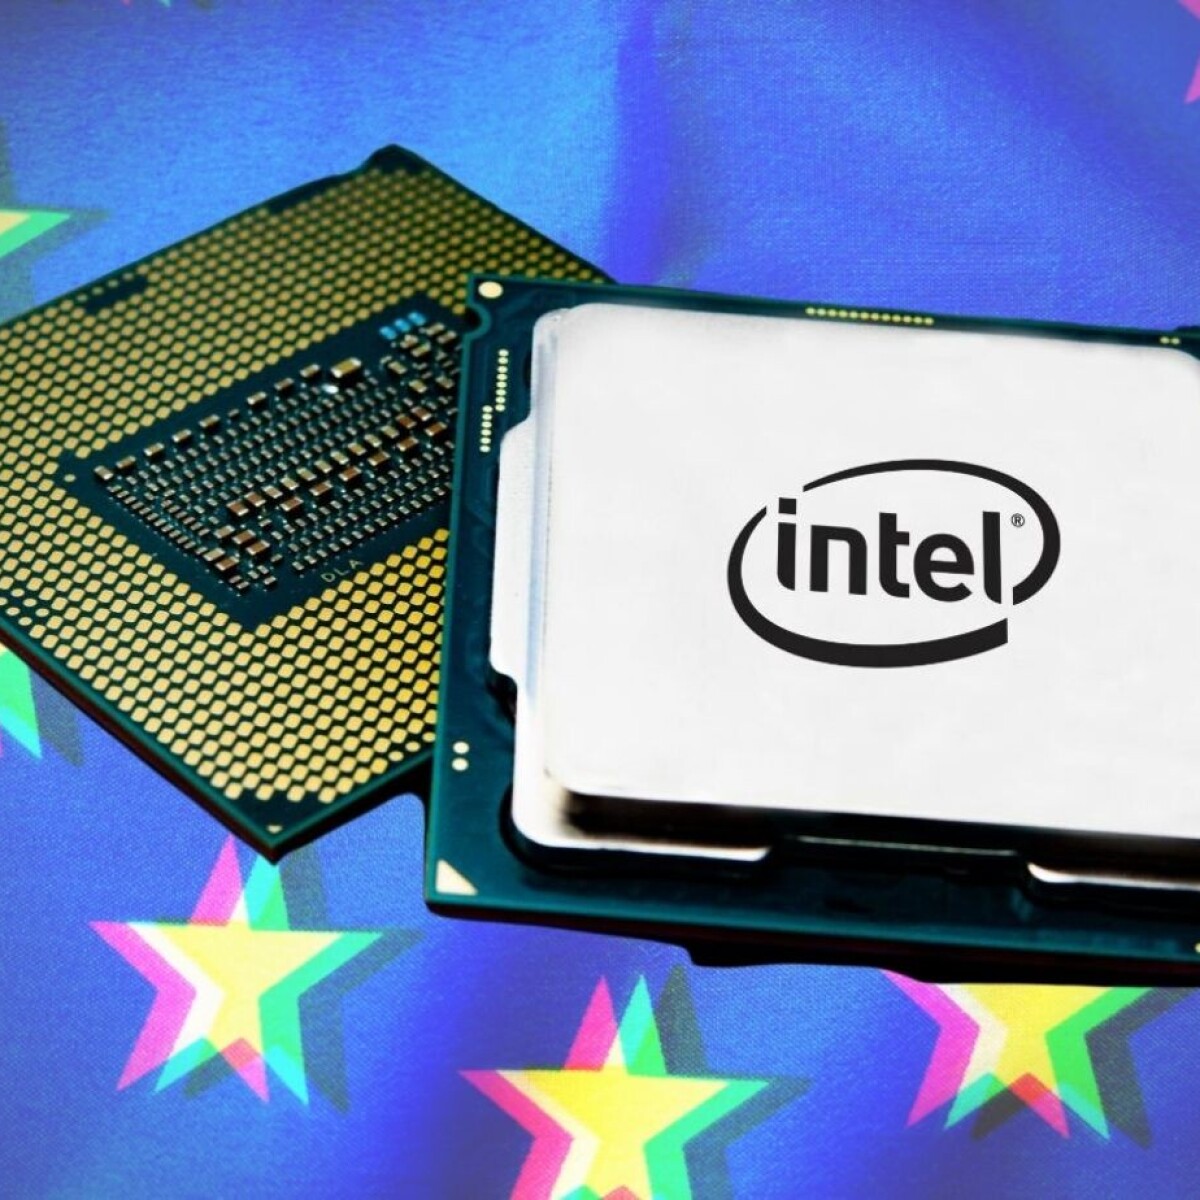 tegenkomen haat Jong Germany and Intel in funding dispute over €17bn chip plant